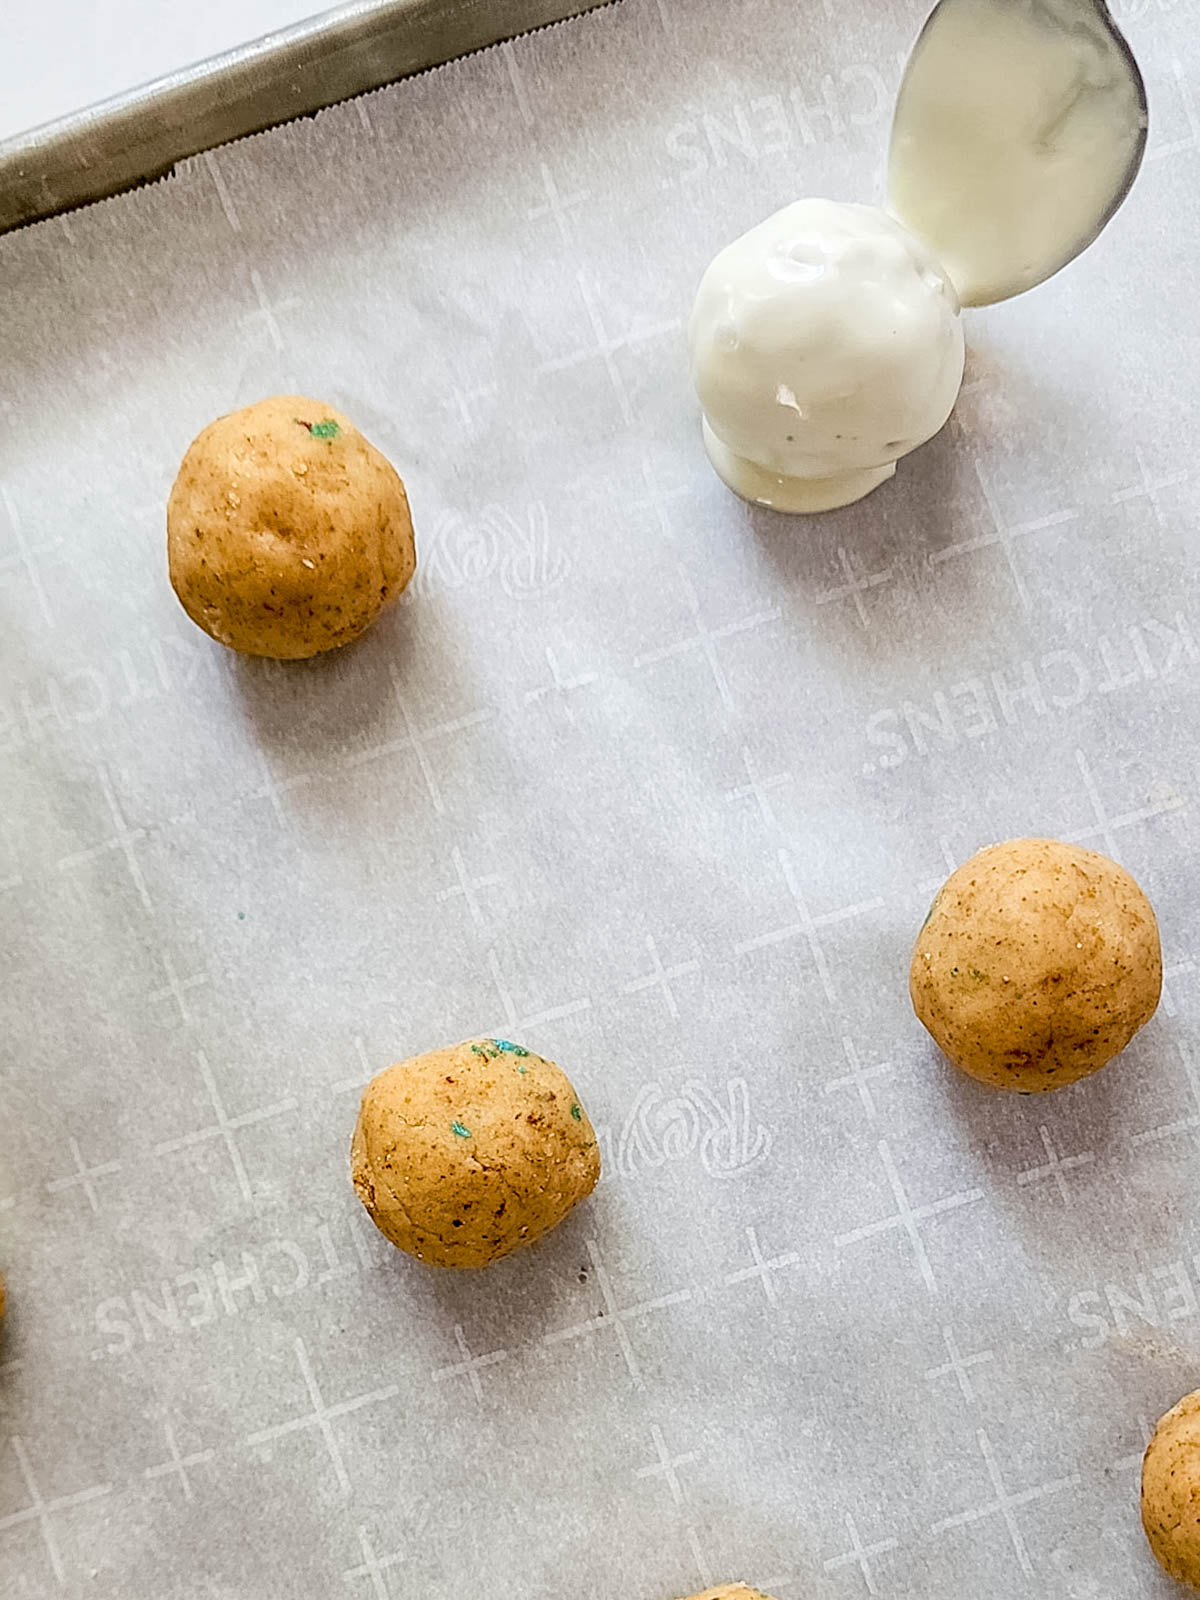 Cake balls on baking sheet